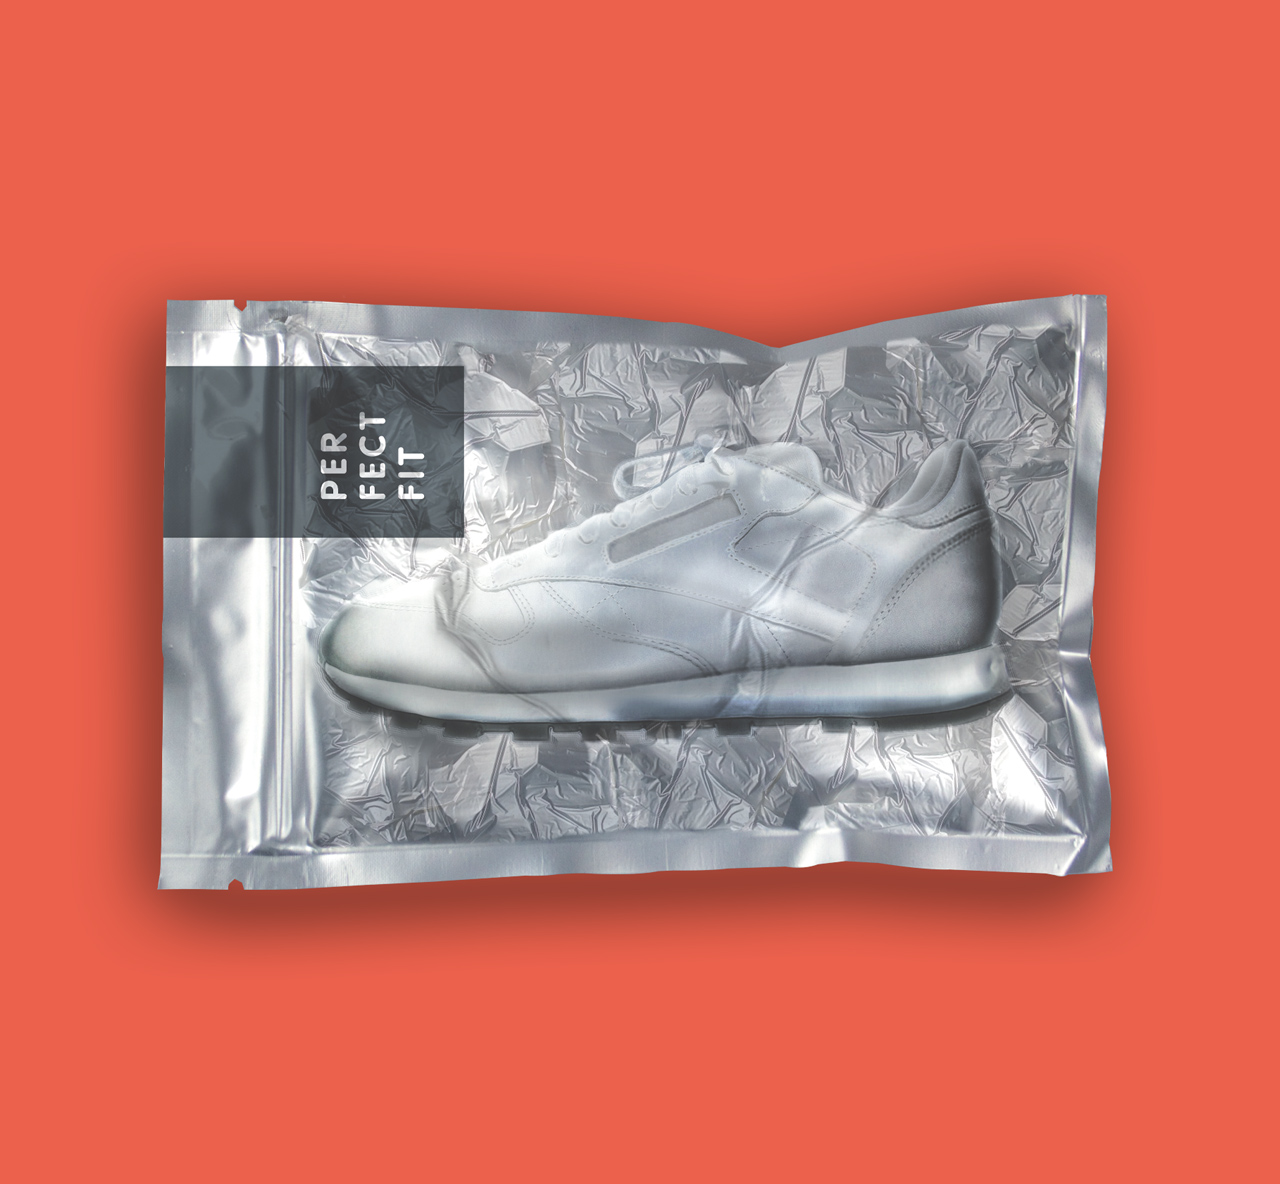 Für den Kunden Gruber-Folien haben wir ein Visual für die Imagebrochure erstellt. Das Bild zeigt einen perfekt verpackter Sneaker in einer Aluverbundfolie von Gruber-Folien.